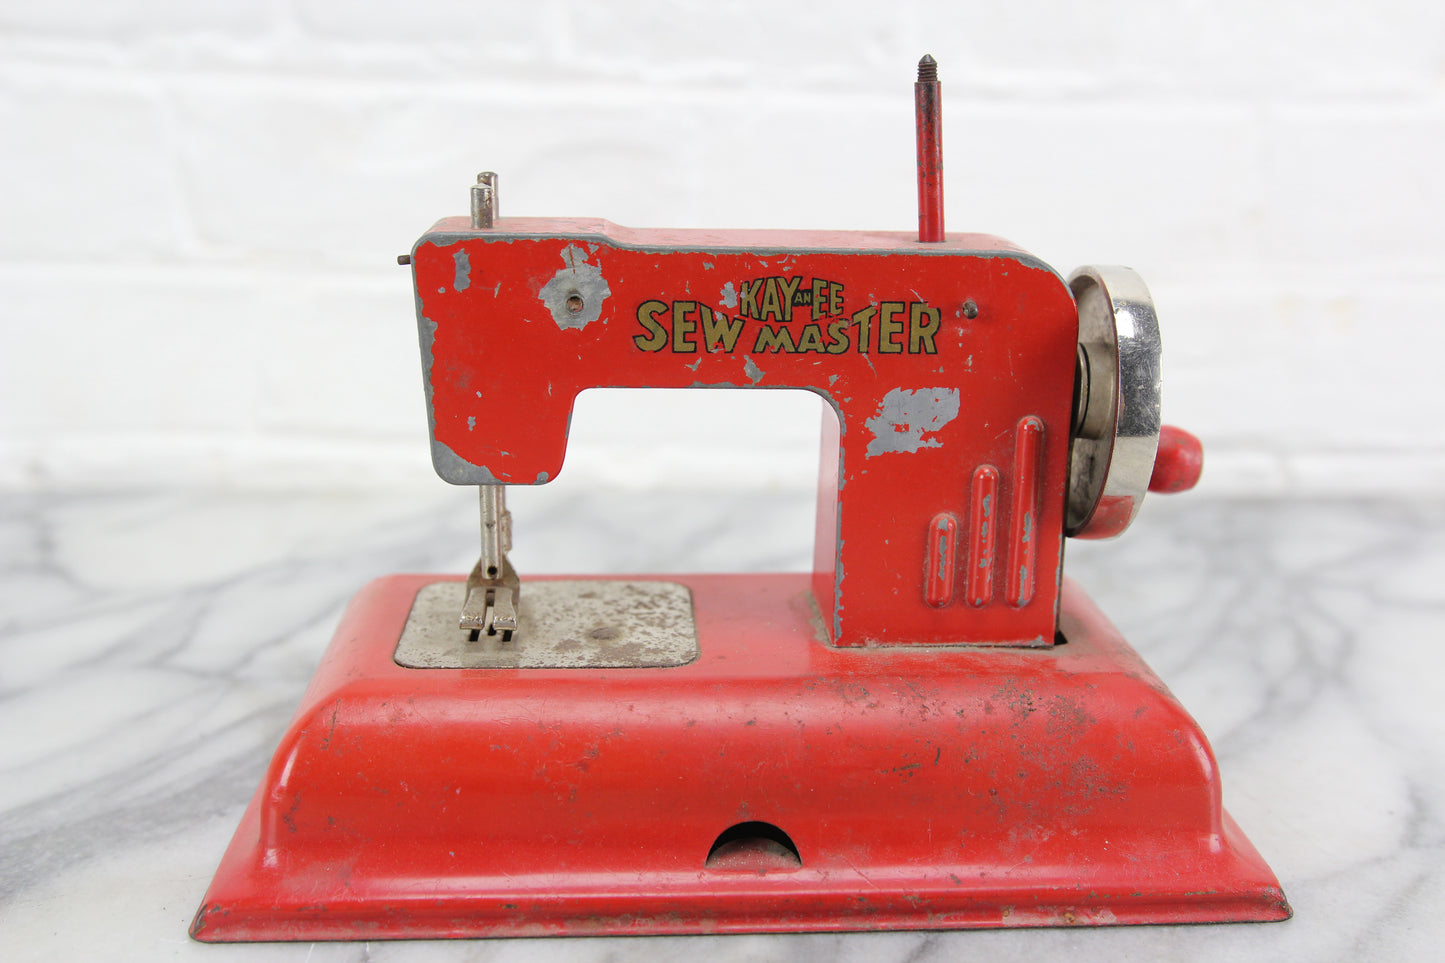 KAYanEE Sew Master Toy Sewing Machine